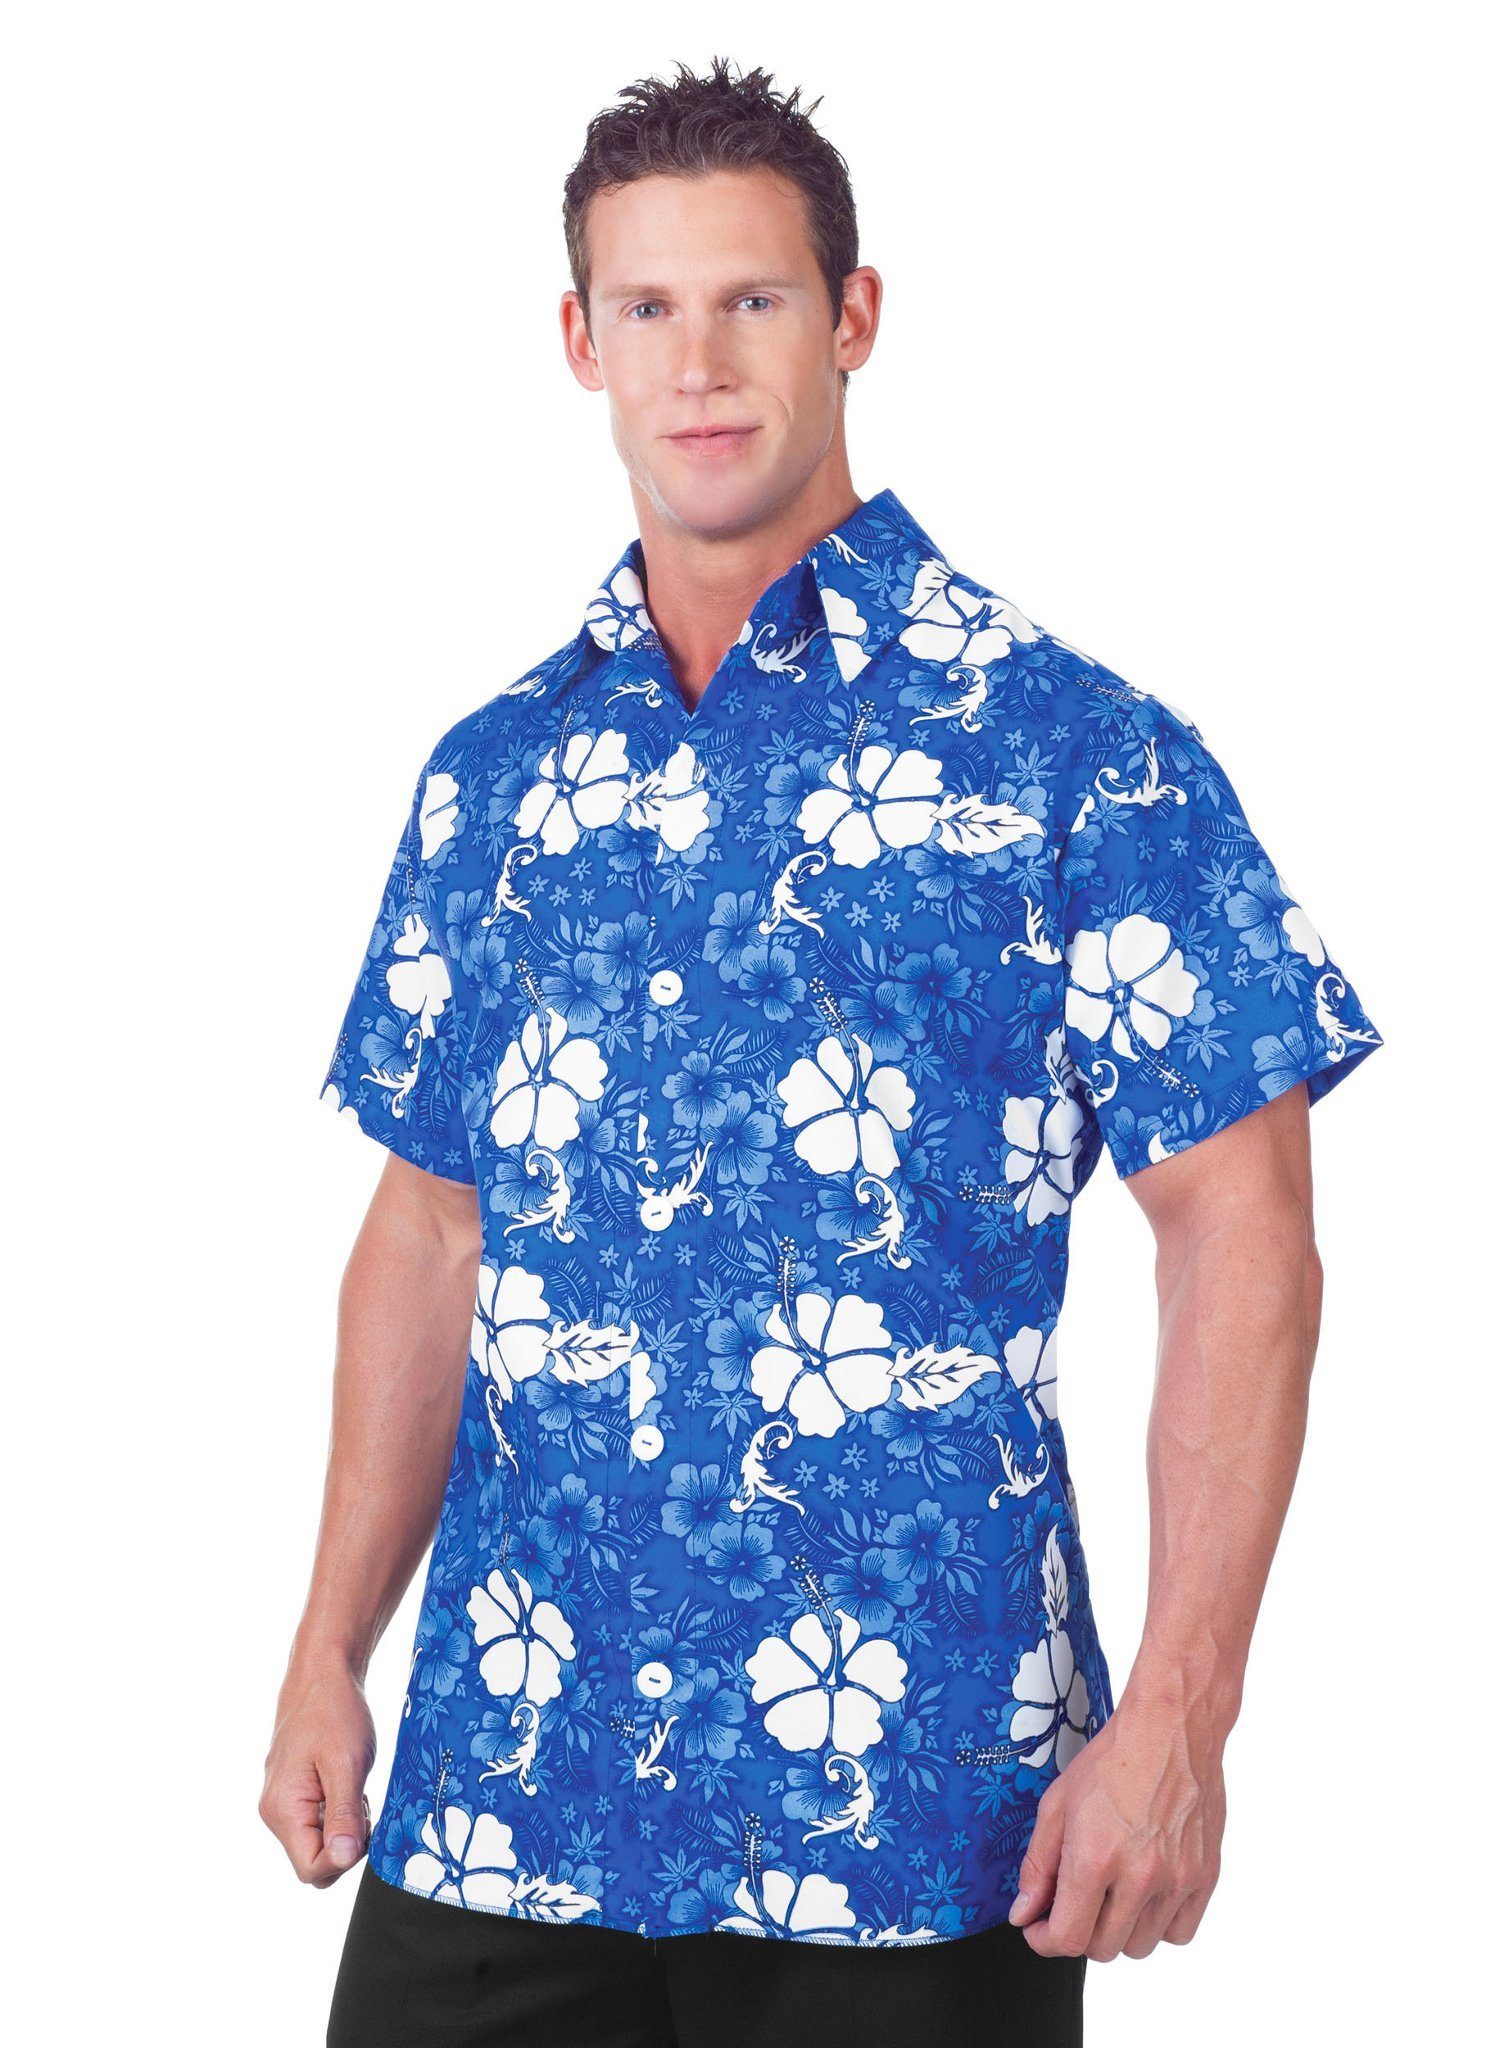 Underwraps T-Shirt Hawaiihemd blau Farbenfrohes Surferhemd für die Beachparty